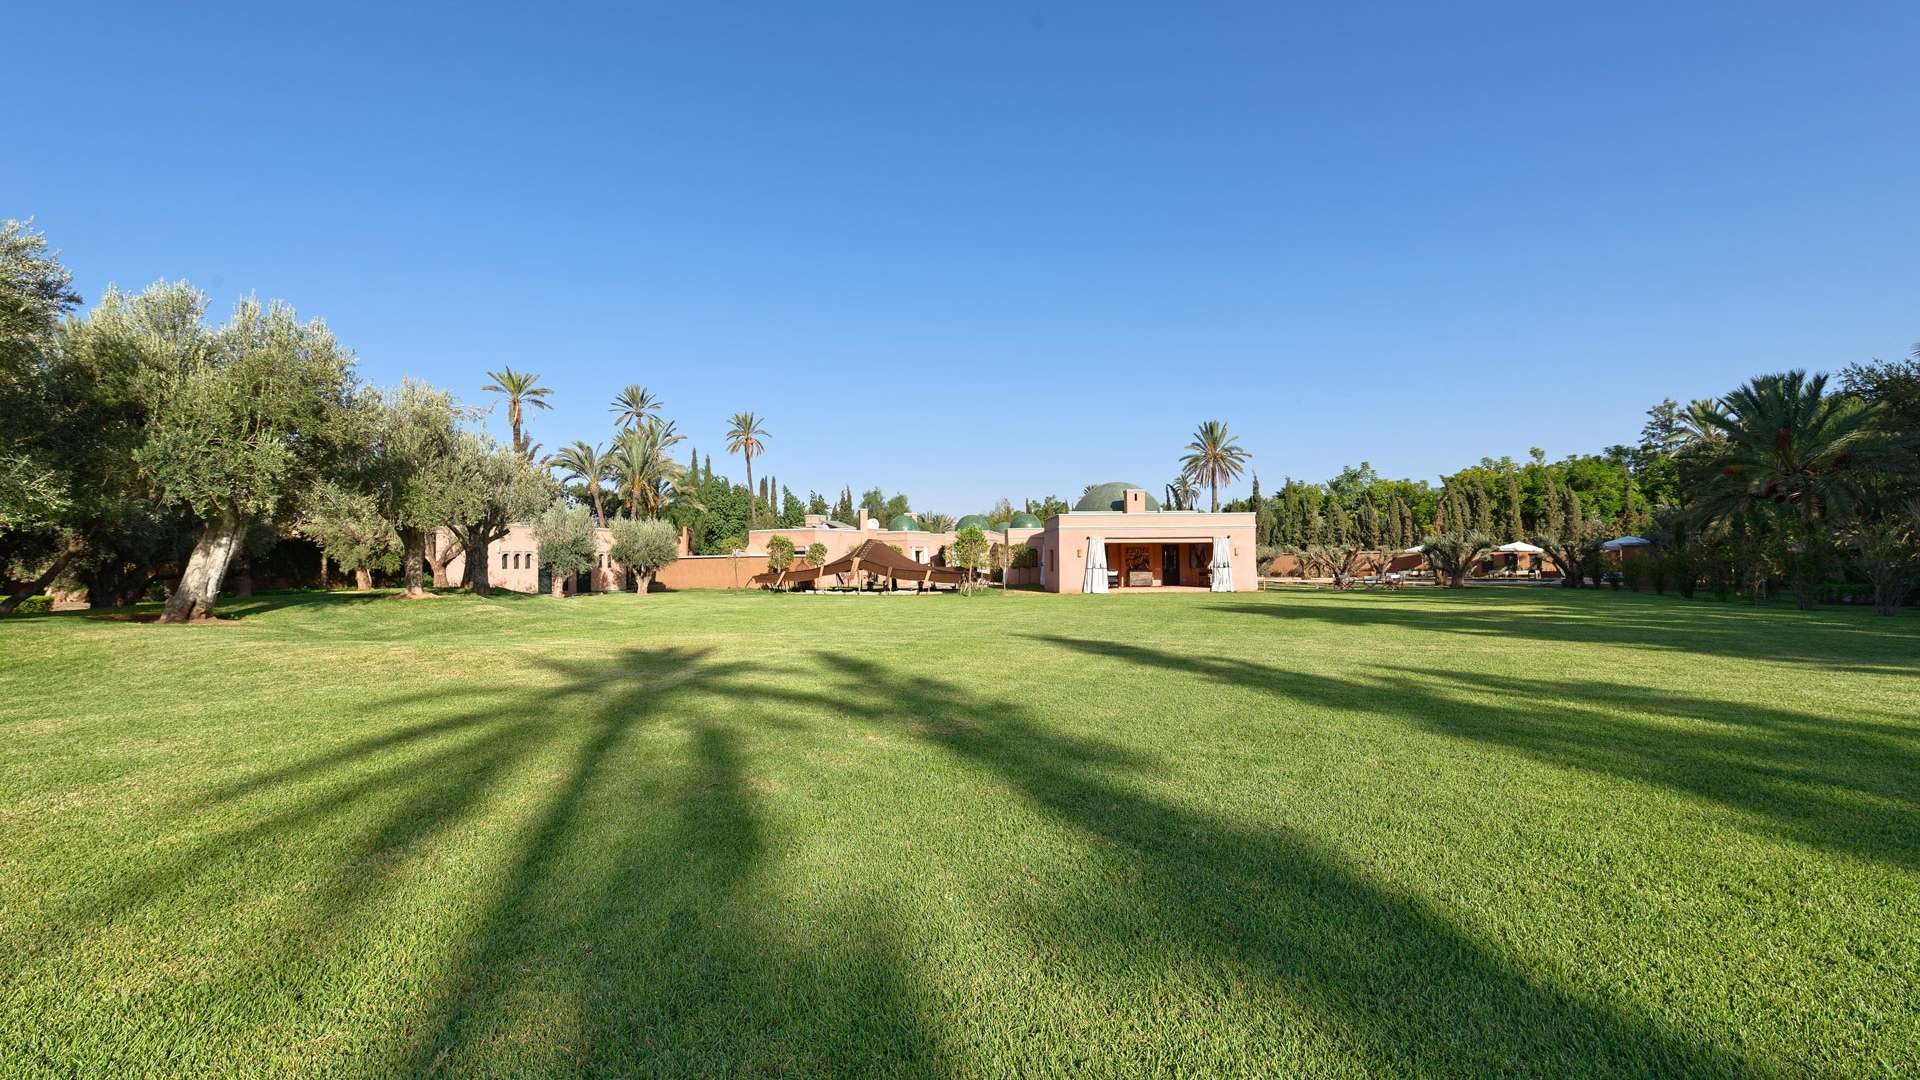 Location de vacances,Villa,Luxueuse villa de 3 ch dans un cadre exceptionnel à la Palmeraie de Marrakech,Marrakech,Palmeraie